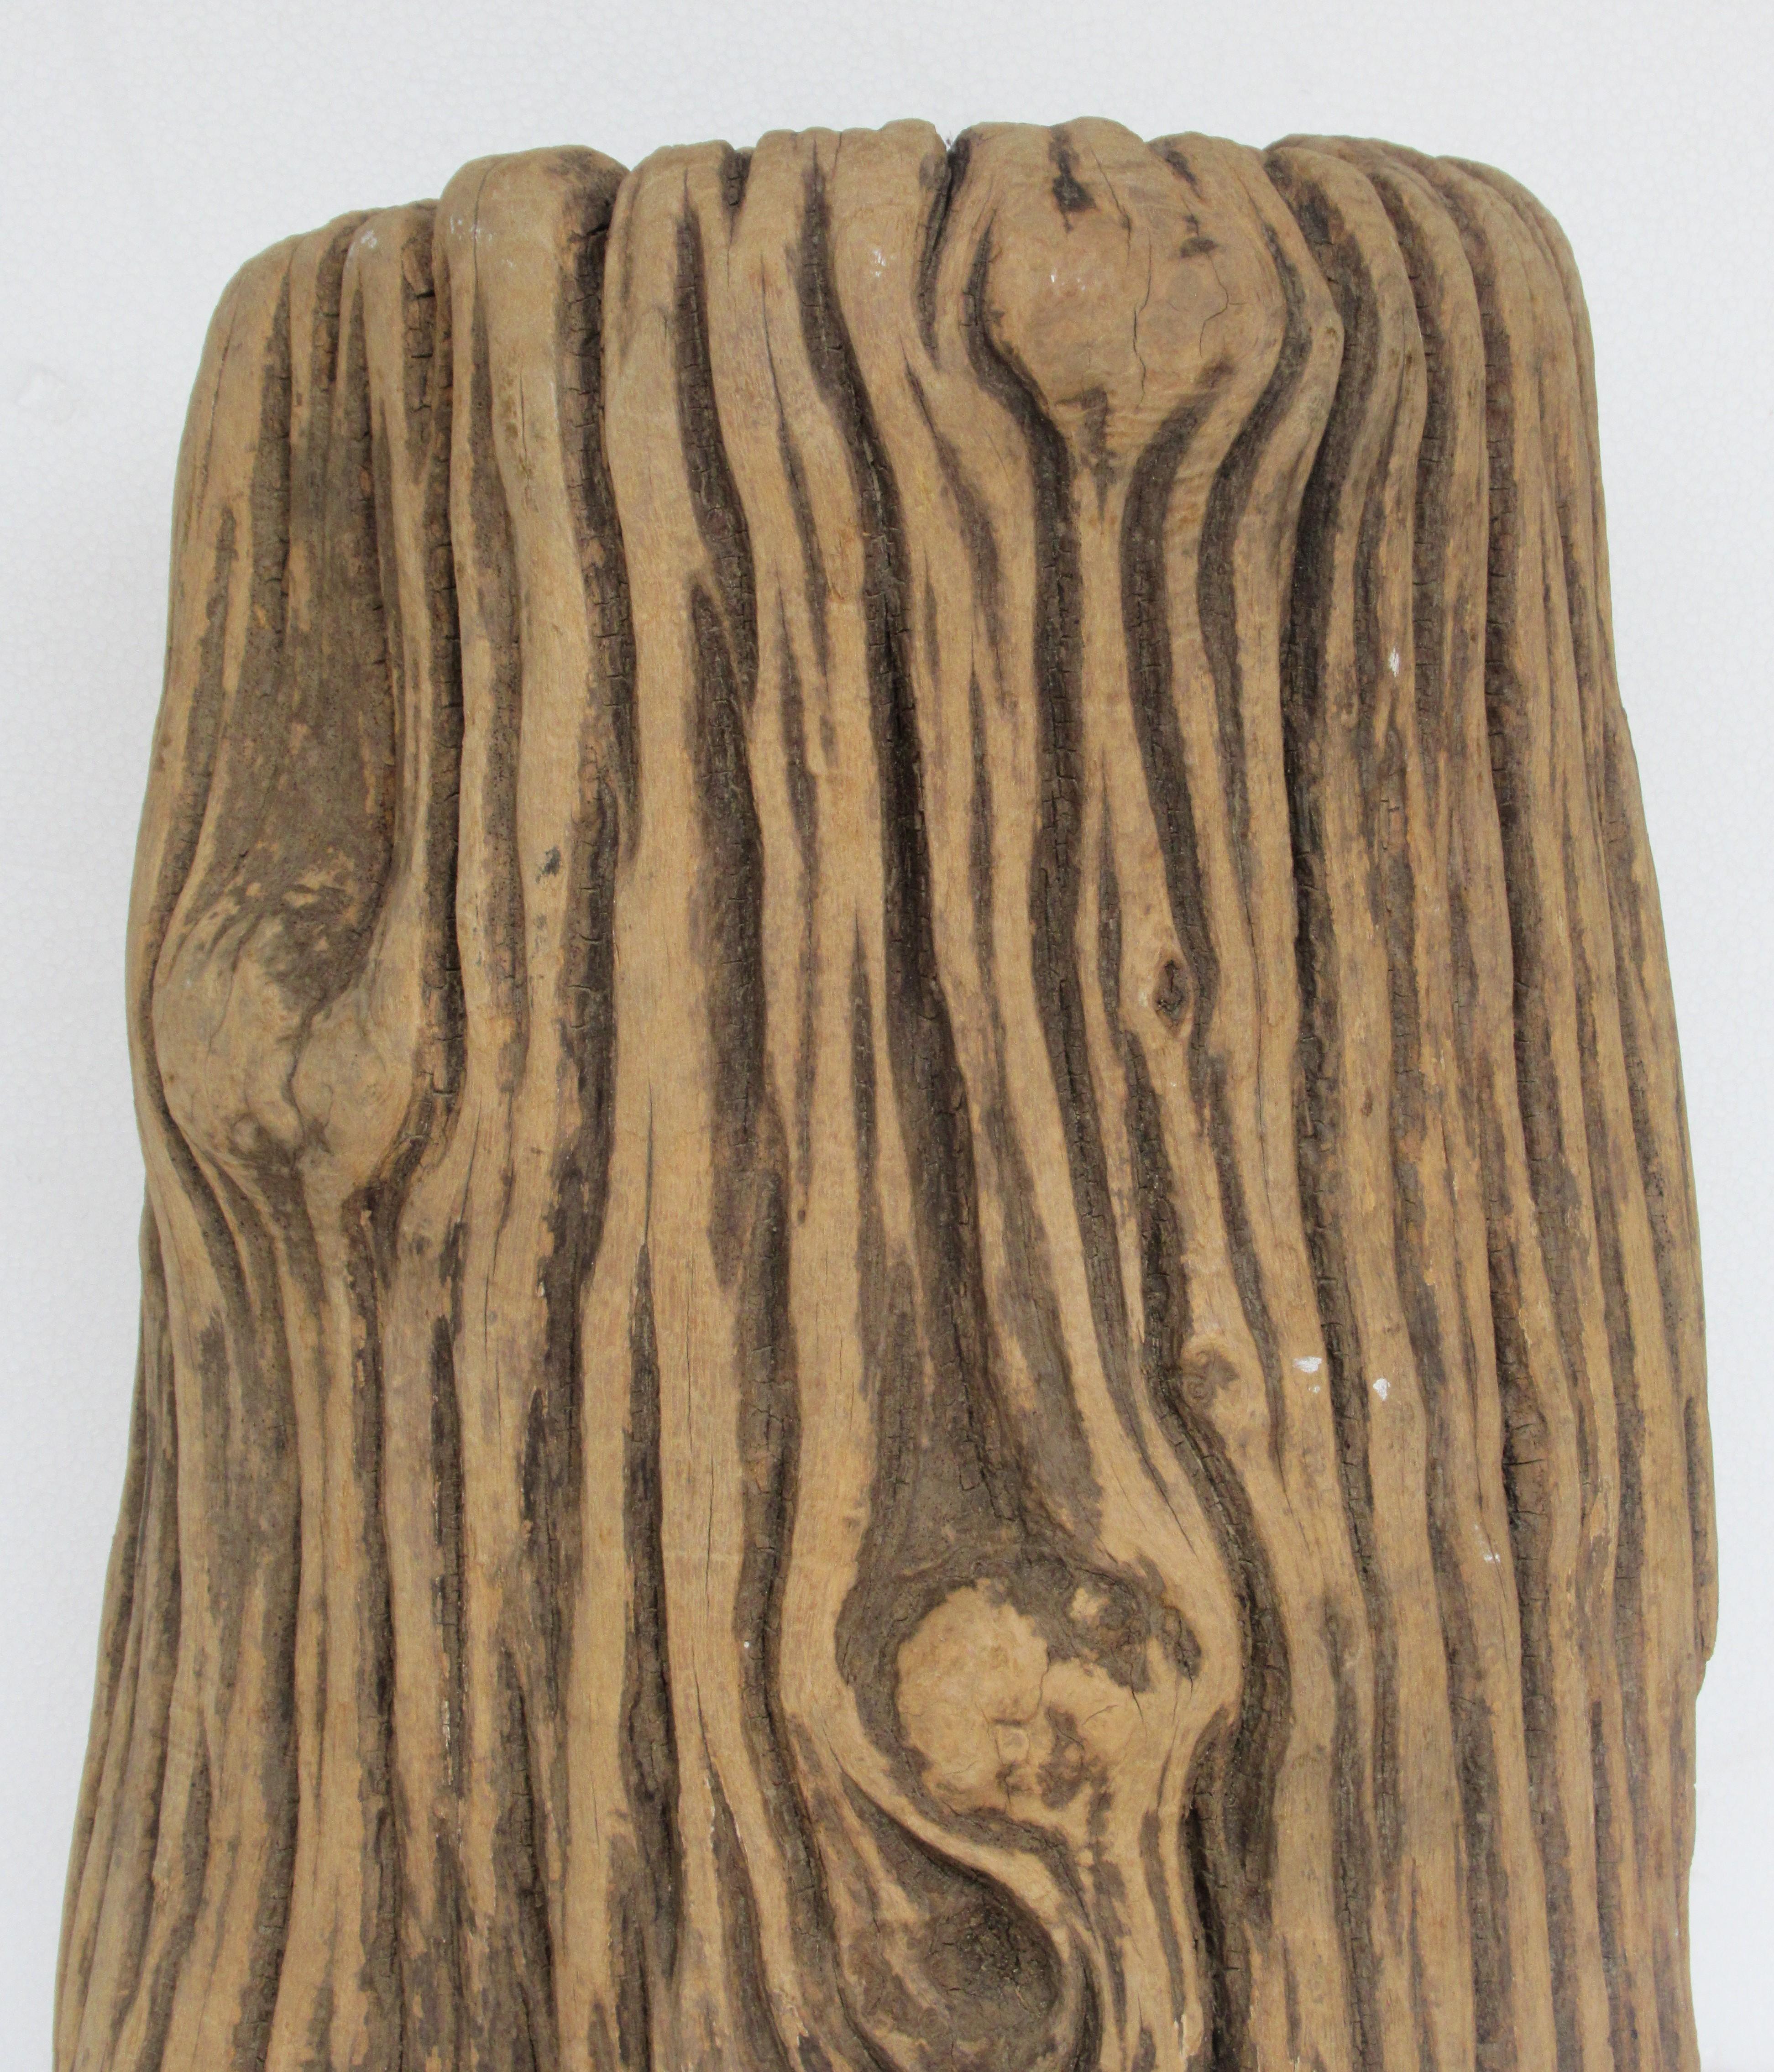 Un fragment de tronc d'arbre d'apparence ancienne qui, à première vue, semble être du faux bois plutôt que du vrai bois. Couleur magnifiquement vieillie et usure de la surface due à de nombreuses années d'exposition aux éléments. Dense et lourd. Une